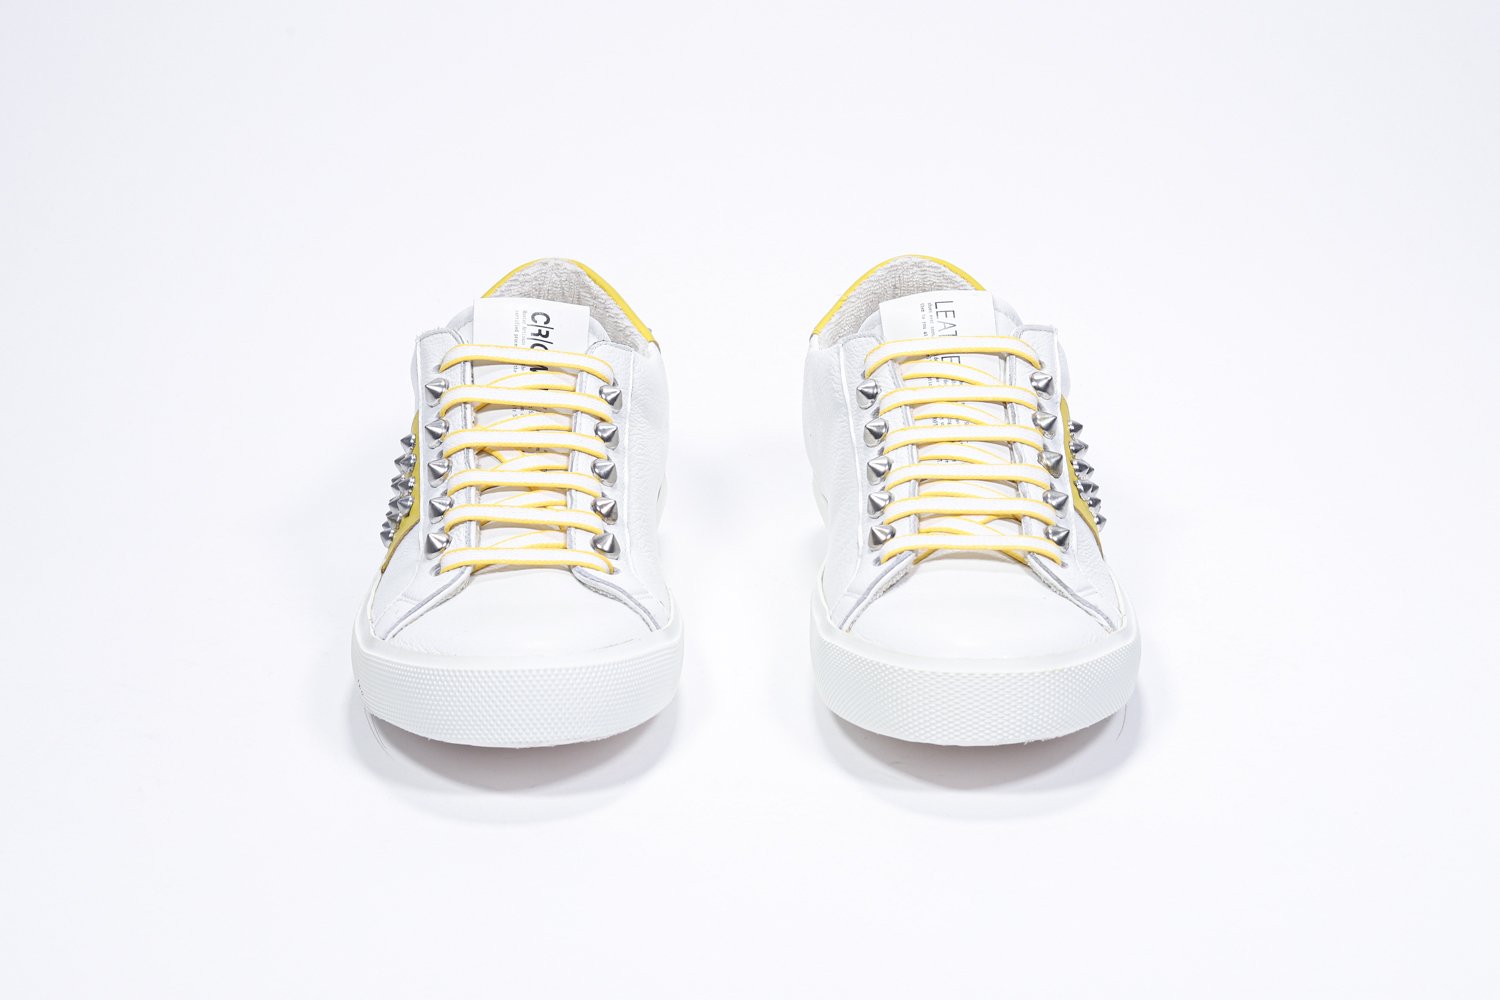 Vista frontale di BASSE bianco e giallo sneaker. Tomaia in pelle con borchie e suola in gomma bianca.